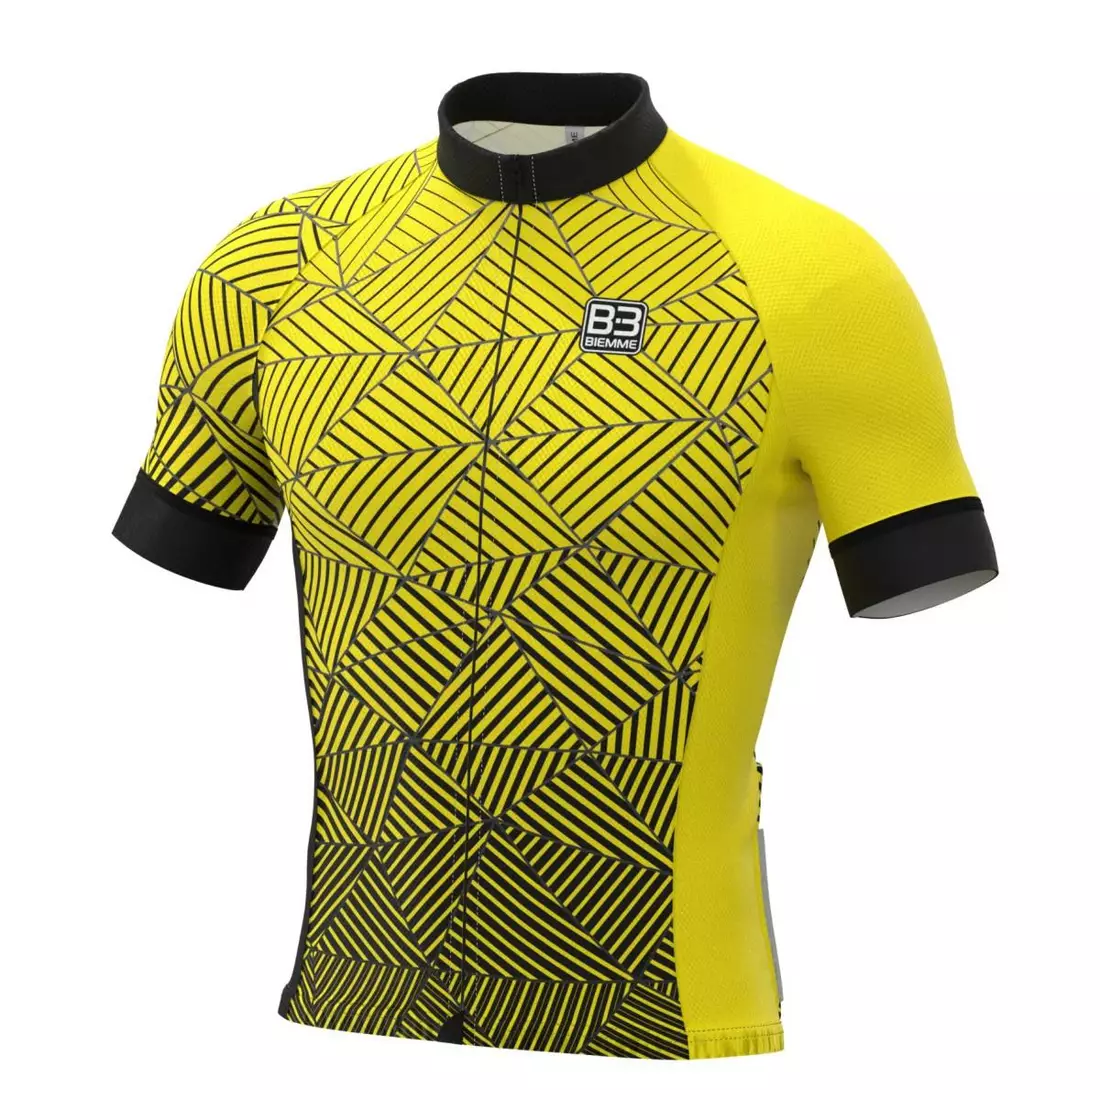 BIEMME pánský cyklistický dres ANGLIRU black yellow